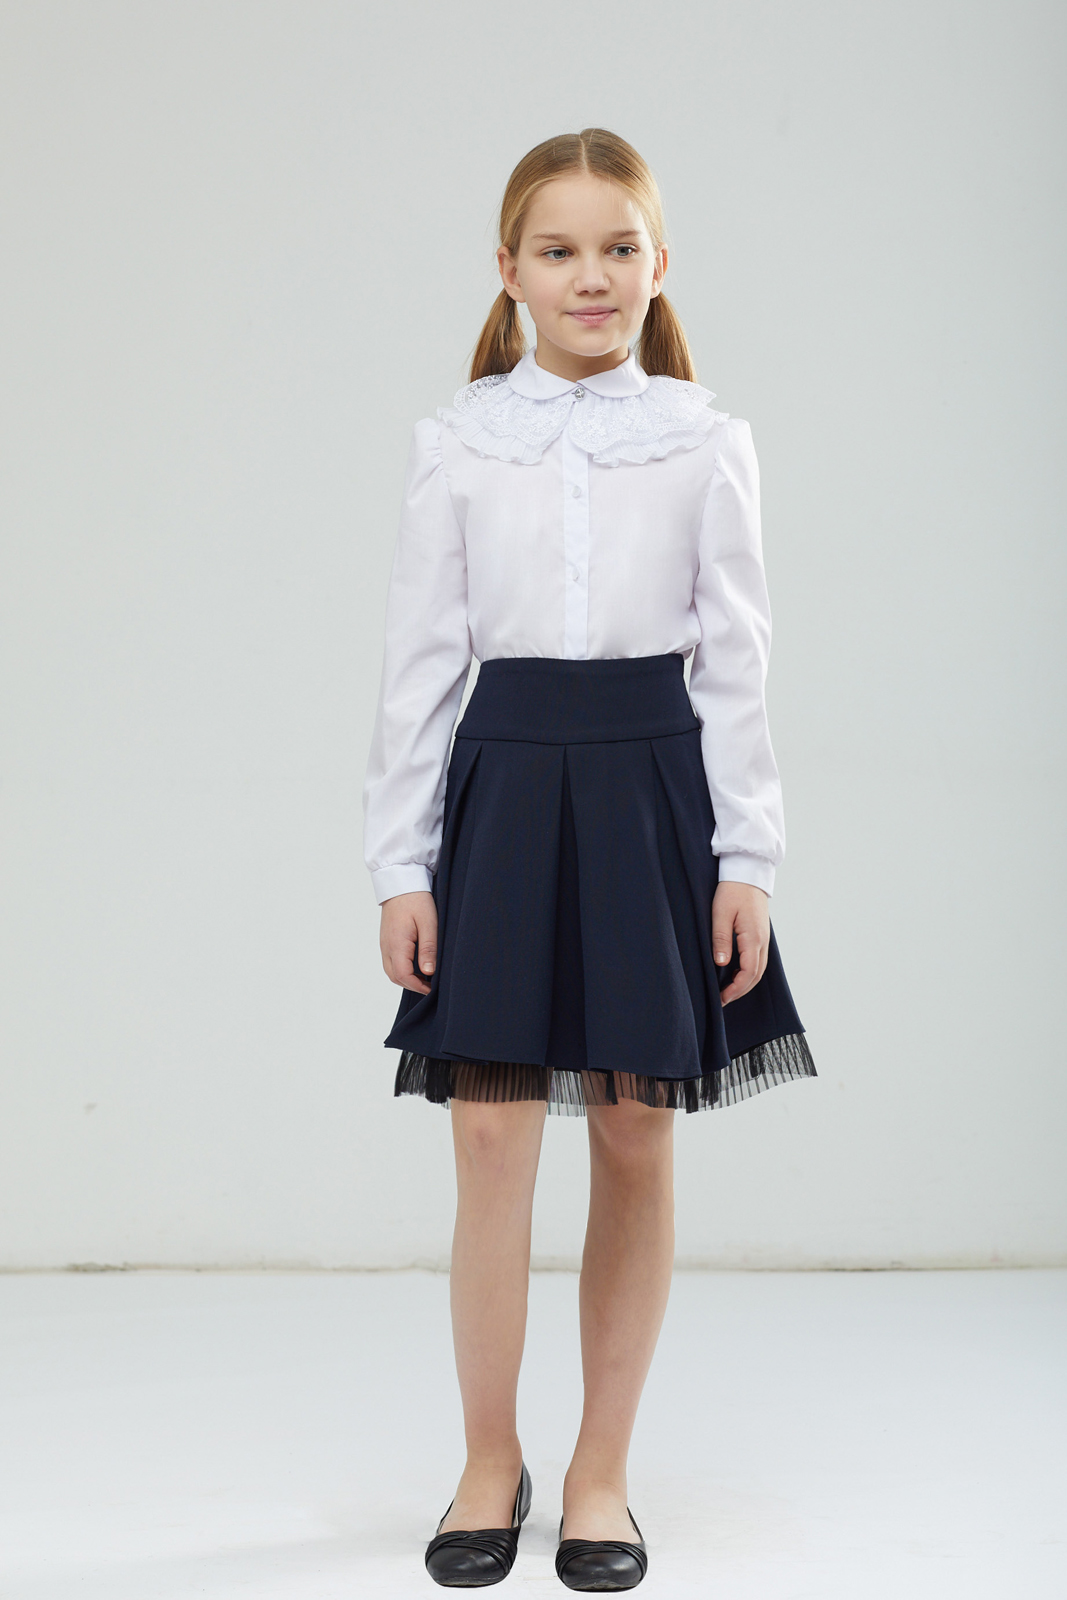 Блузка для девочки Смена, цвет: белый. 17с121. Размер 146